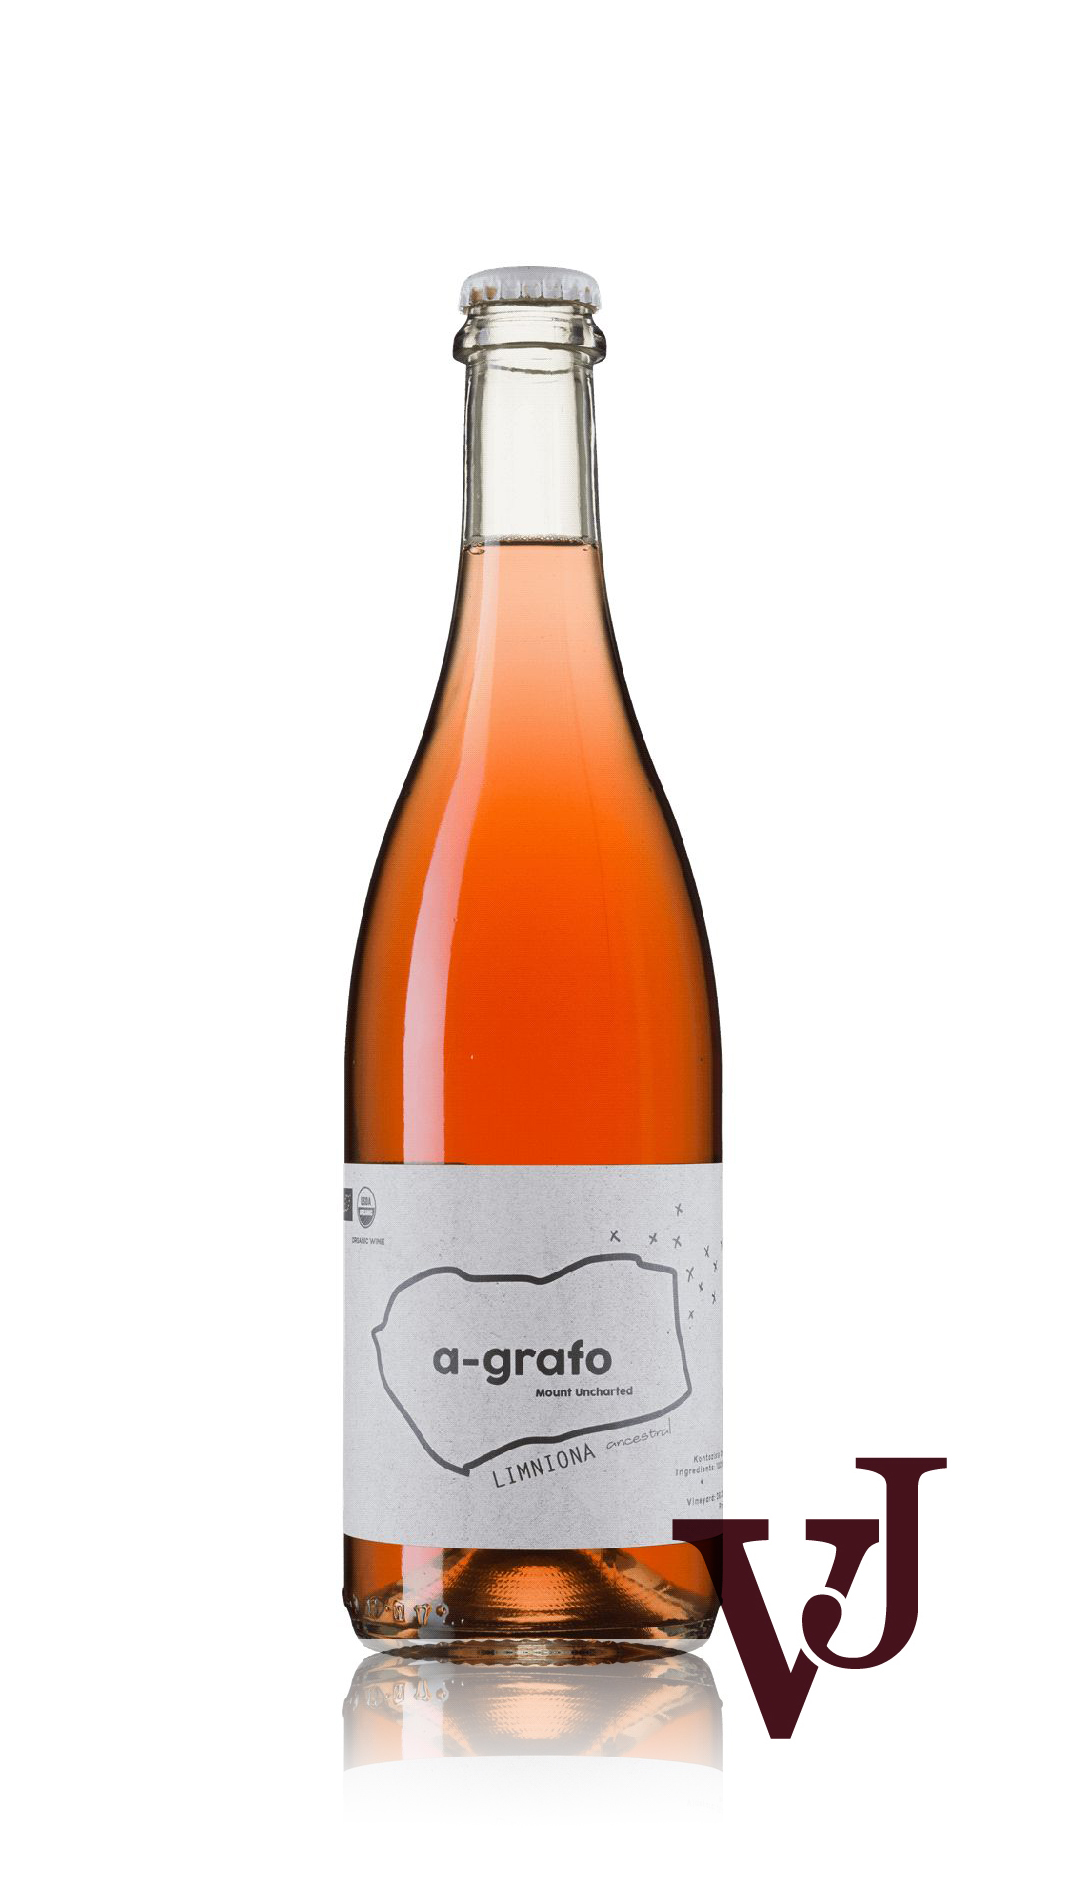 Rosé Vin - A-Grafo Pet-Nat Limniona 2020 artikel nummer 7304601 från producenten Kontozisis från Grekland.